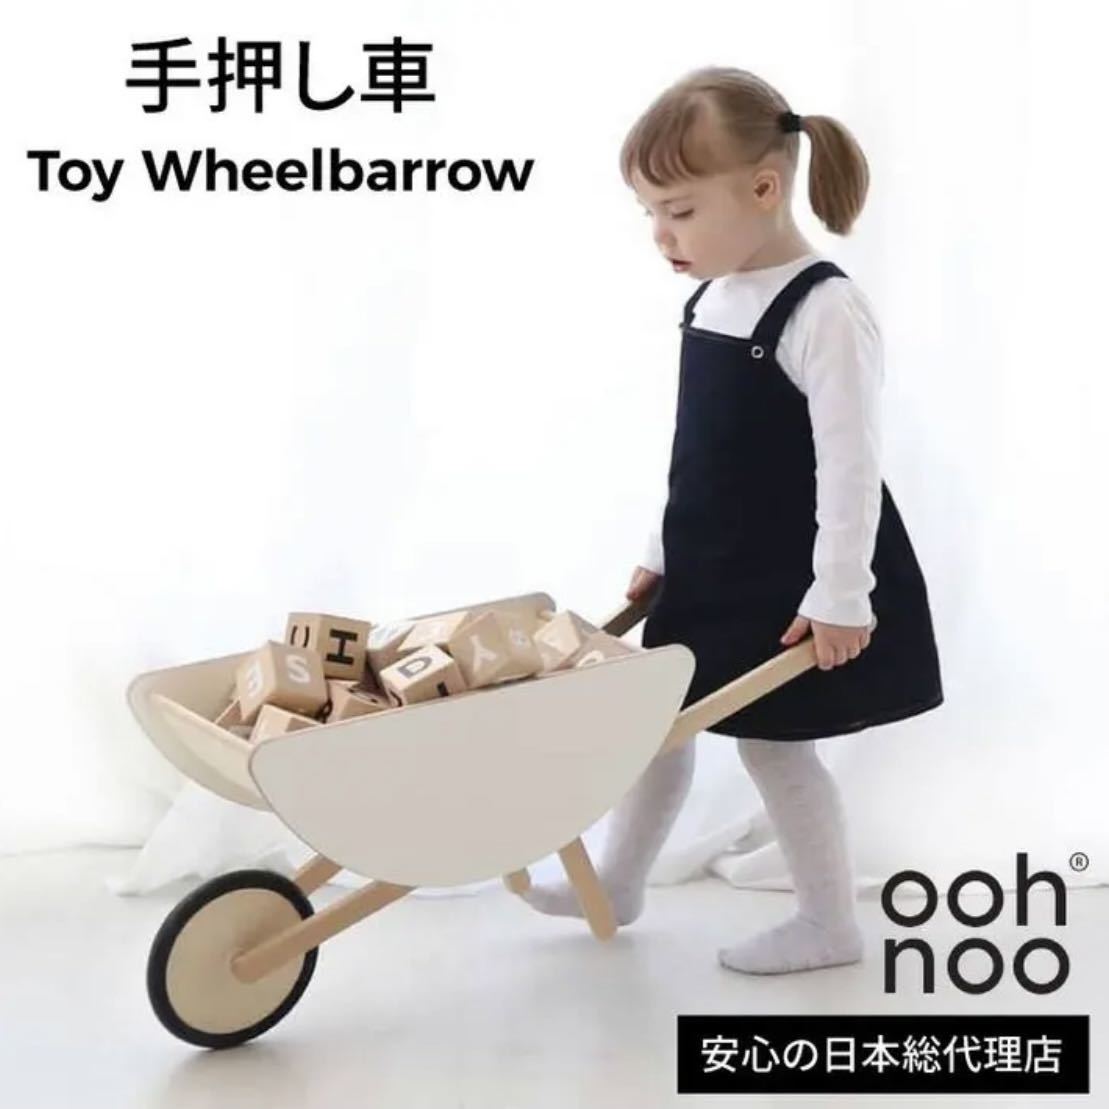 ooh noo オーノー手押し車赤ちゃん木製おもちゃトイホイール